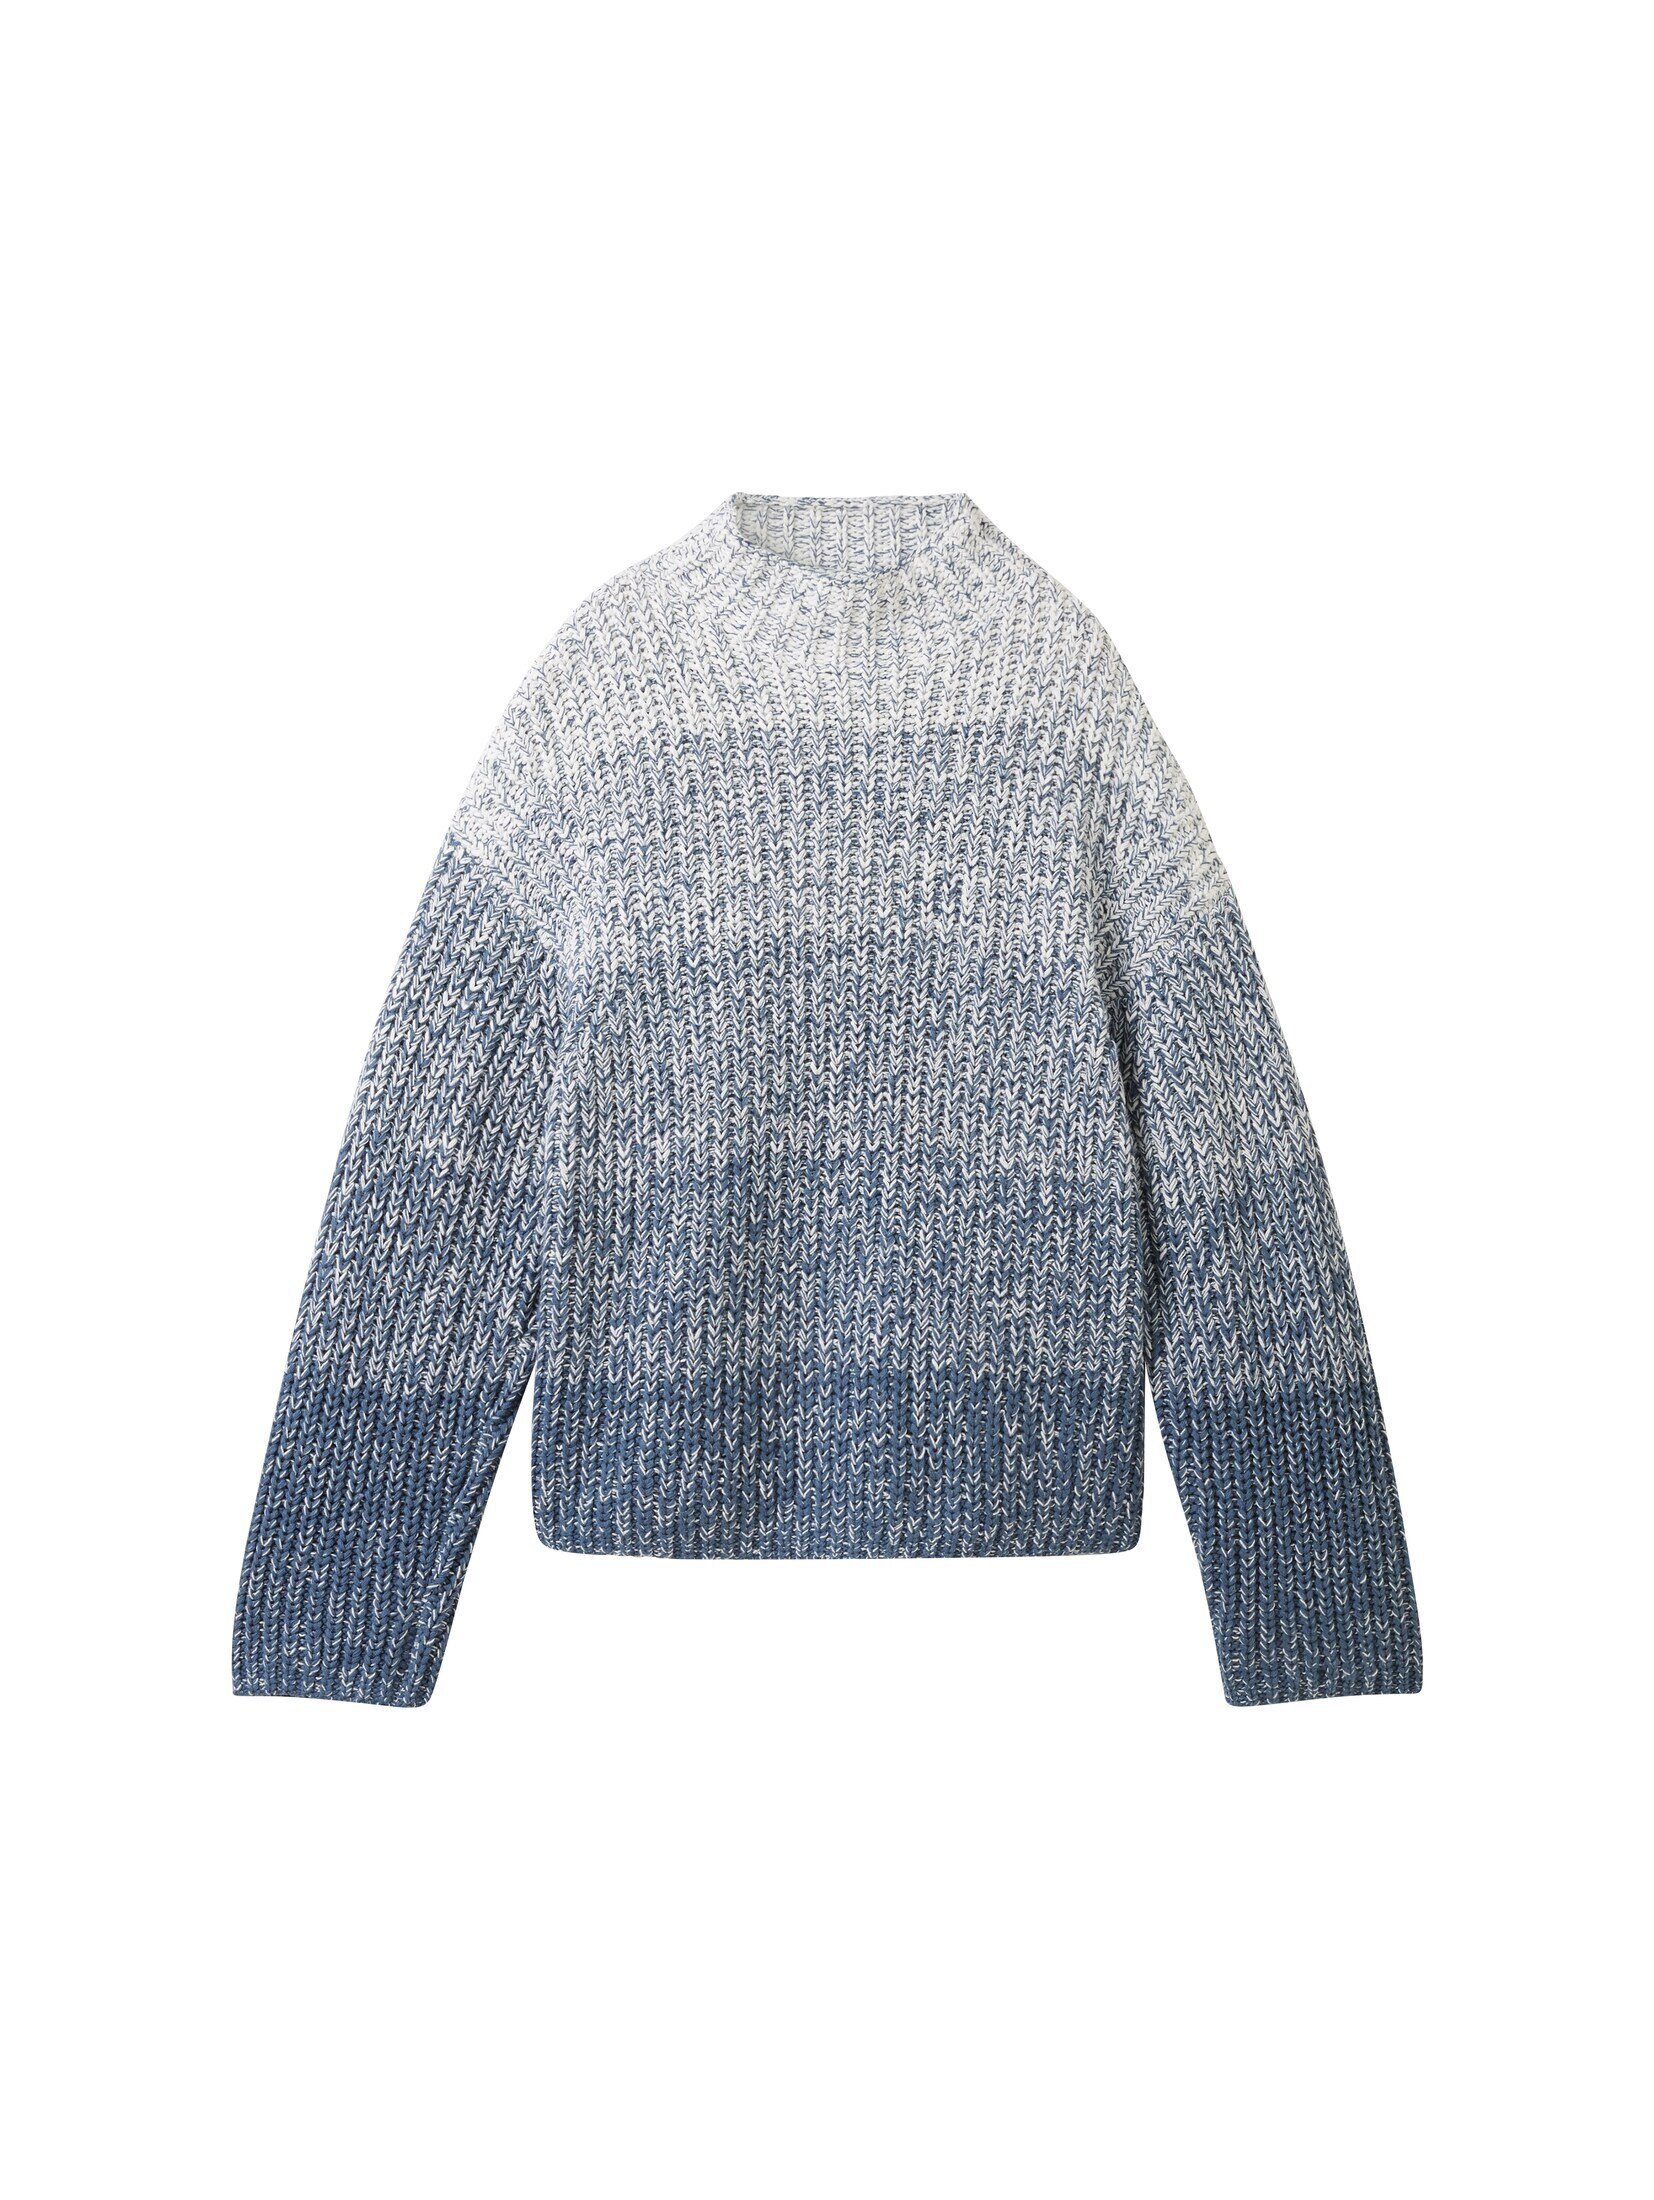 Strickpullover TAILOR gradient Farbverlauf blue Strickpullover knitted mit TOM